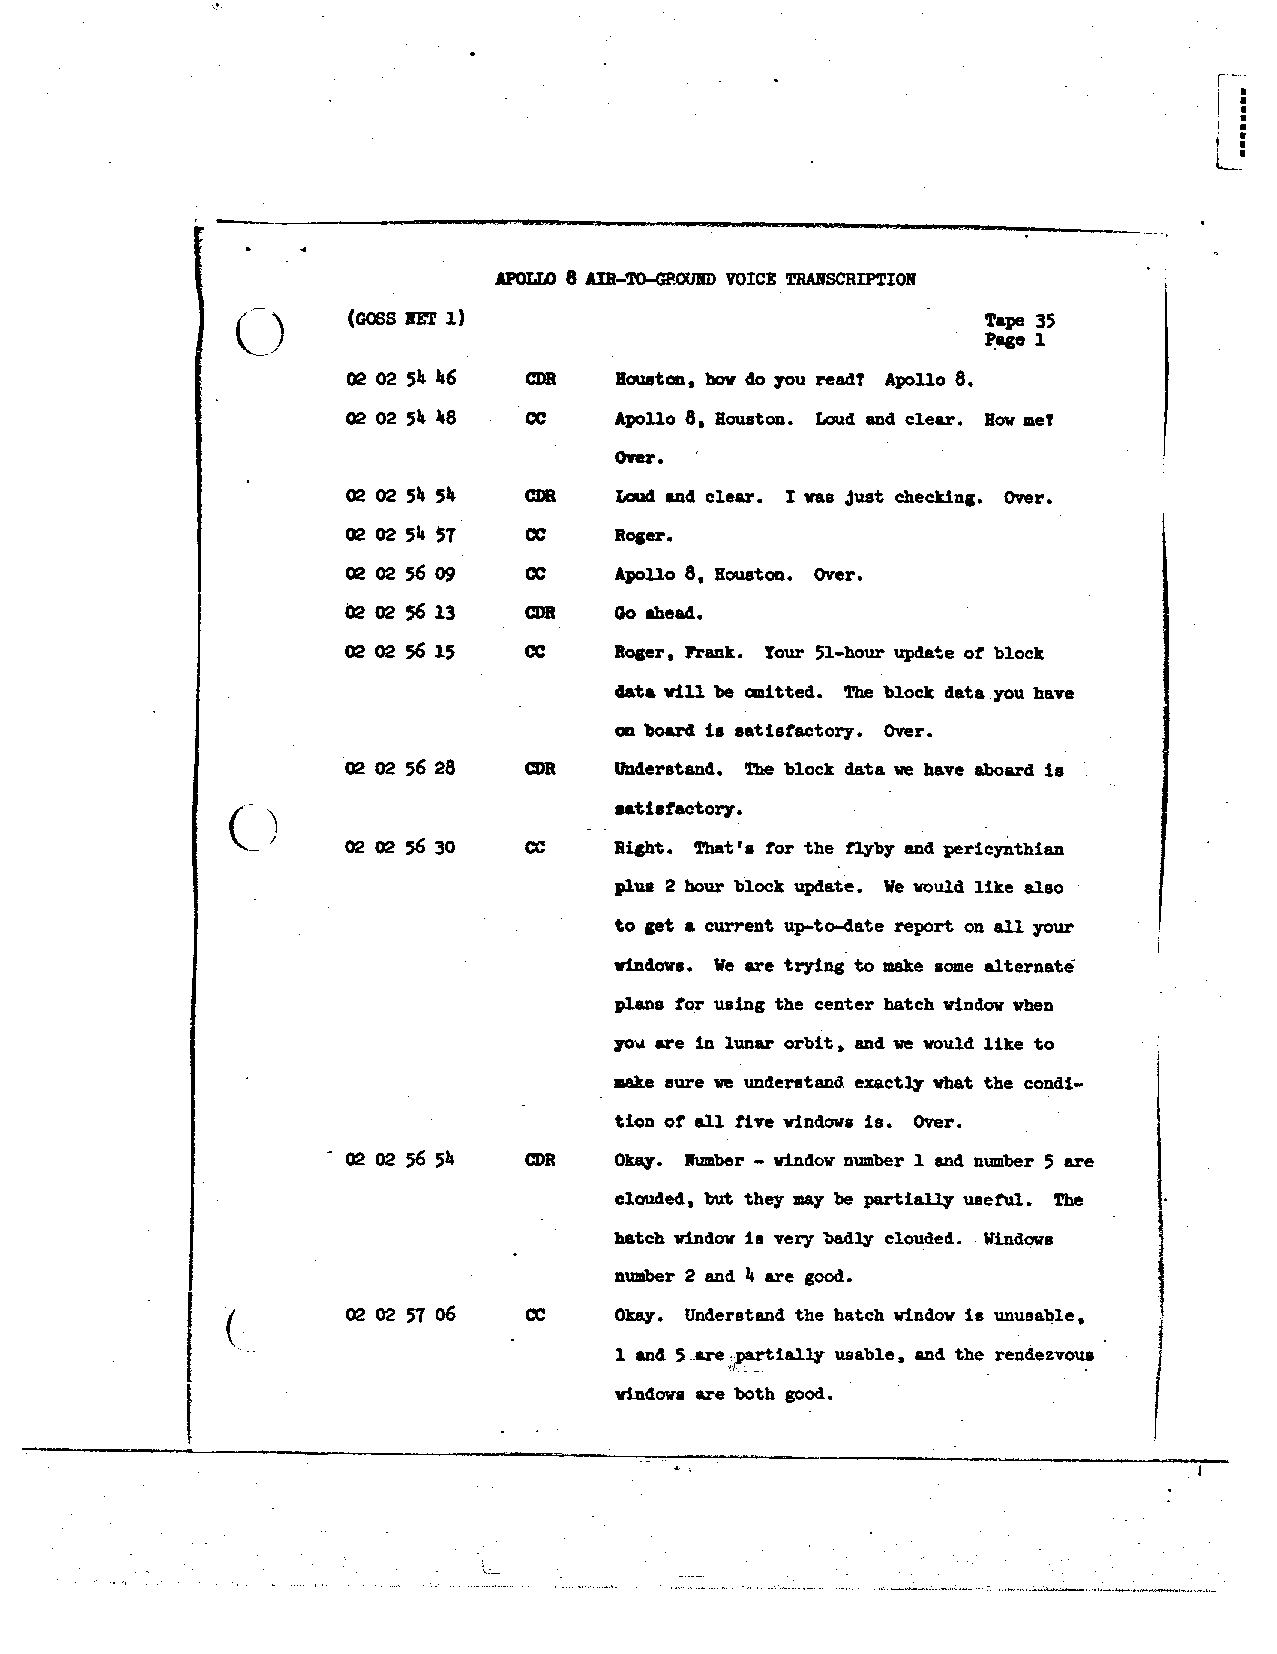 Page 264 of Apollo 8’s original transcript